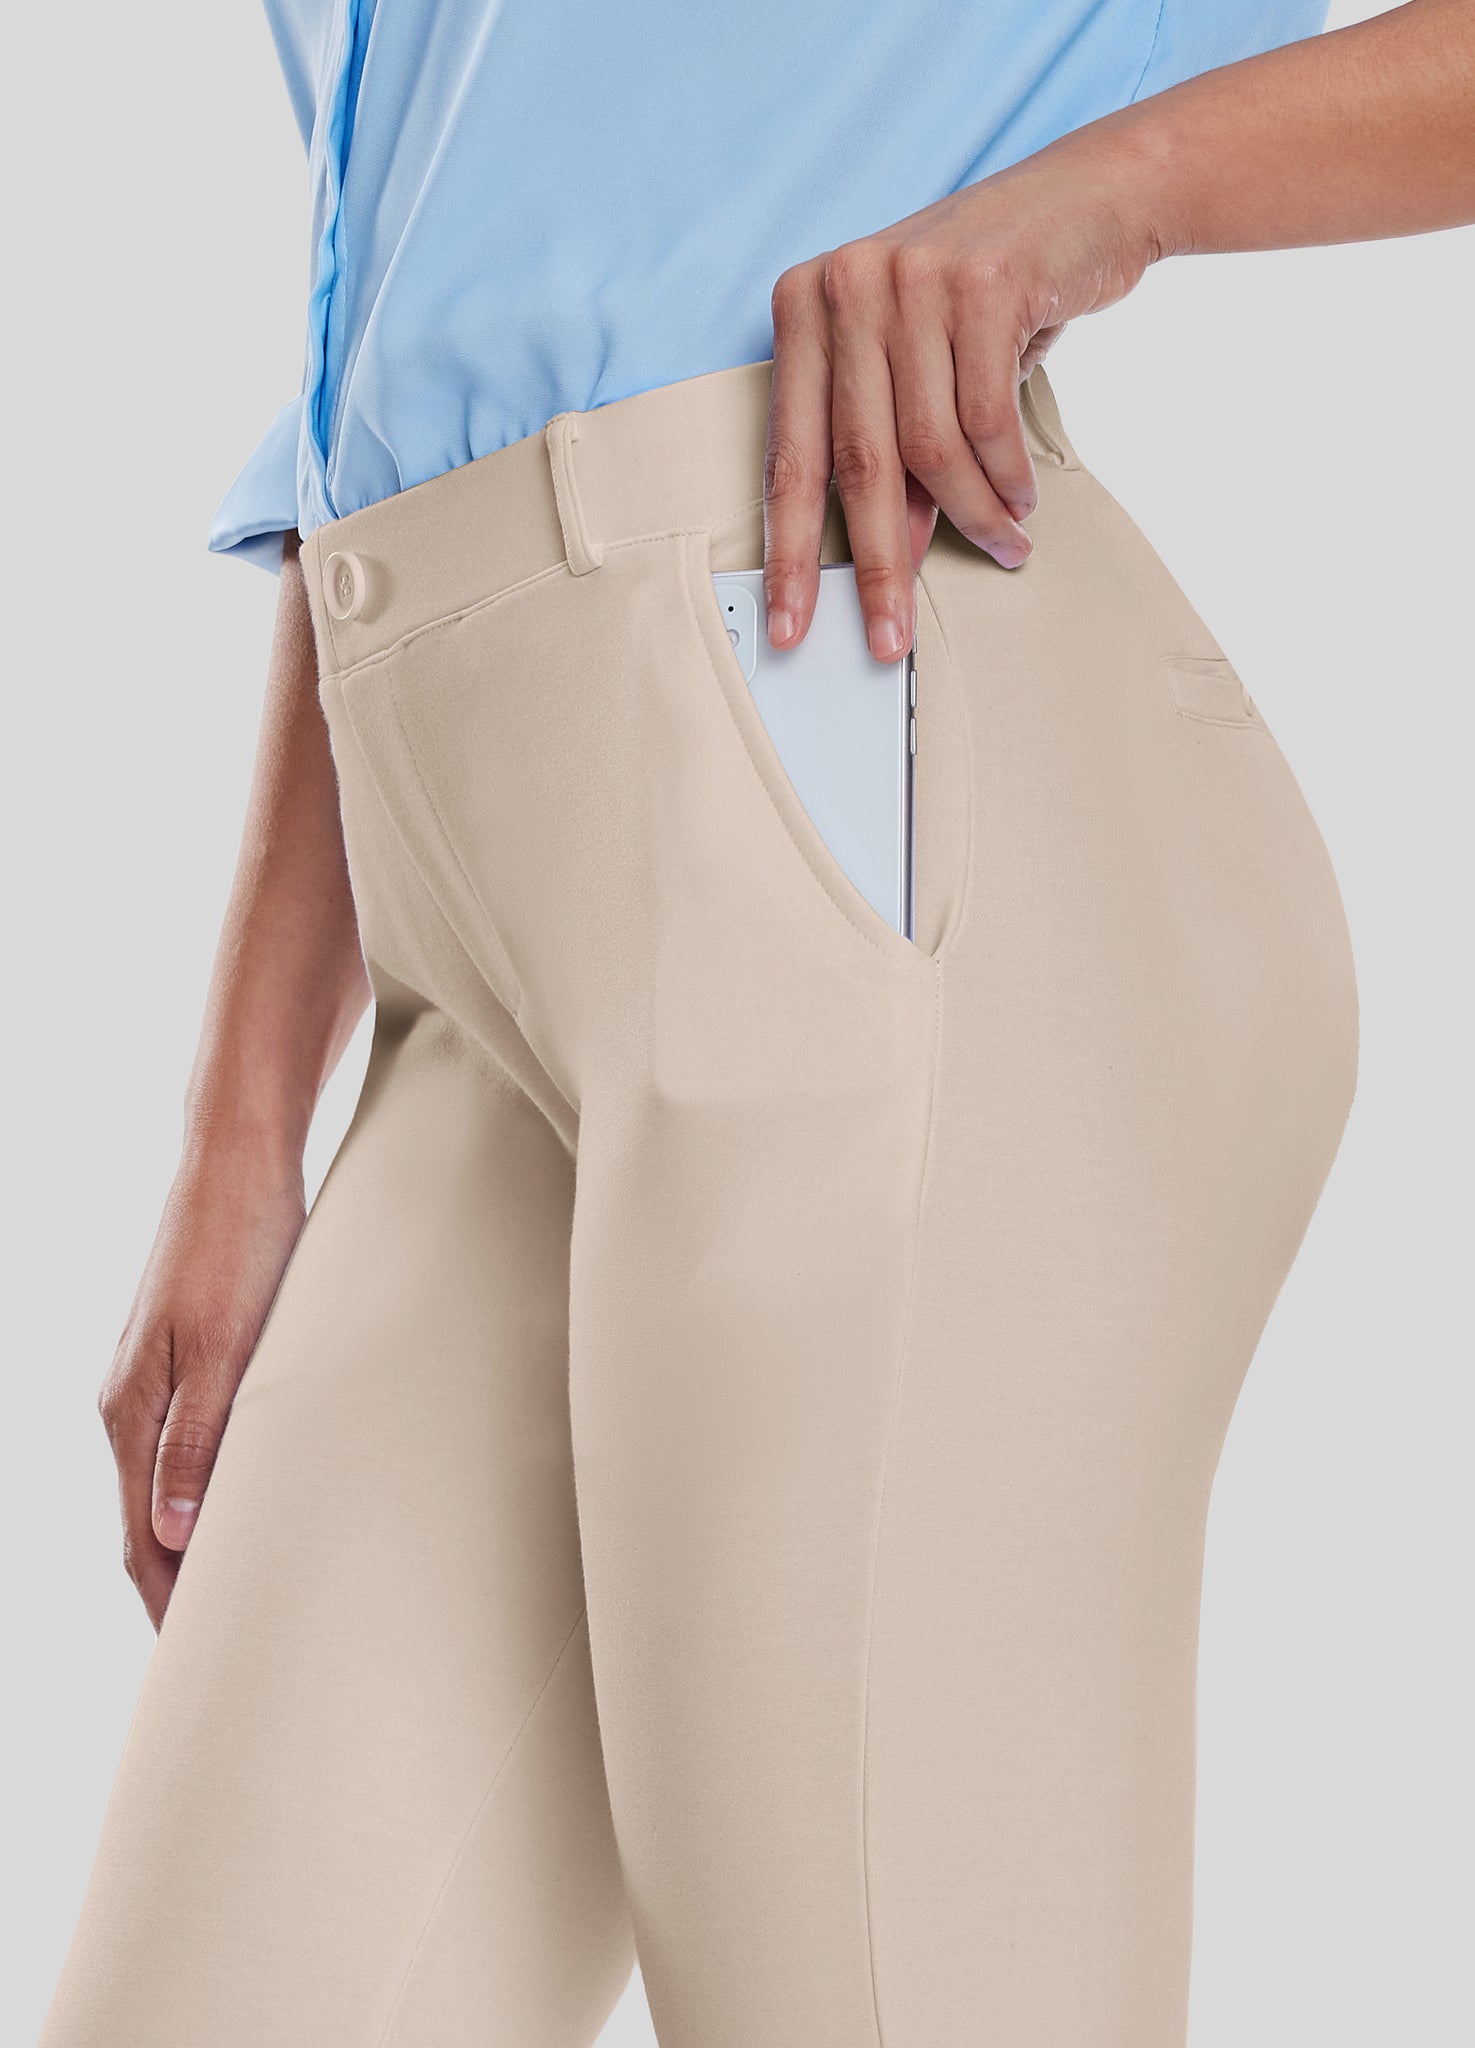 Women's Stretch Capri Dress Pants